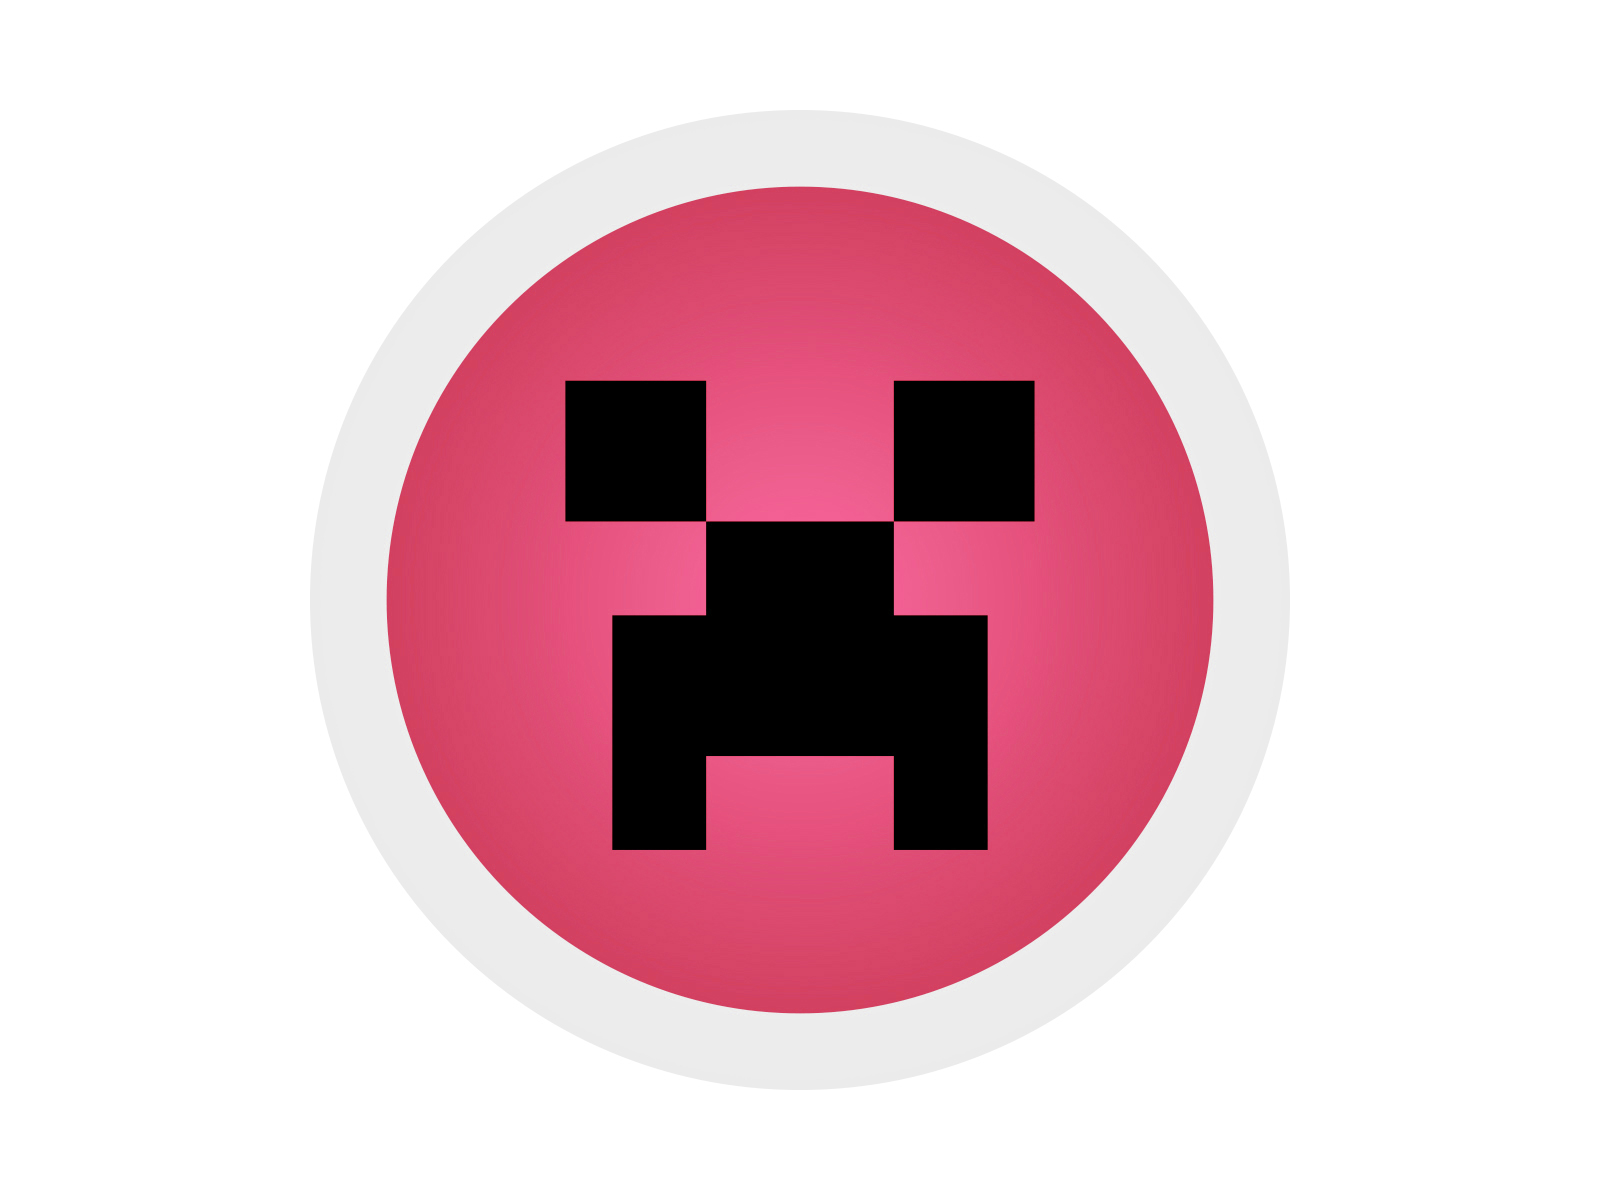 Minecraft Red Round Icon Design Inspiration